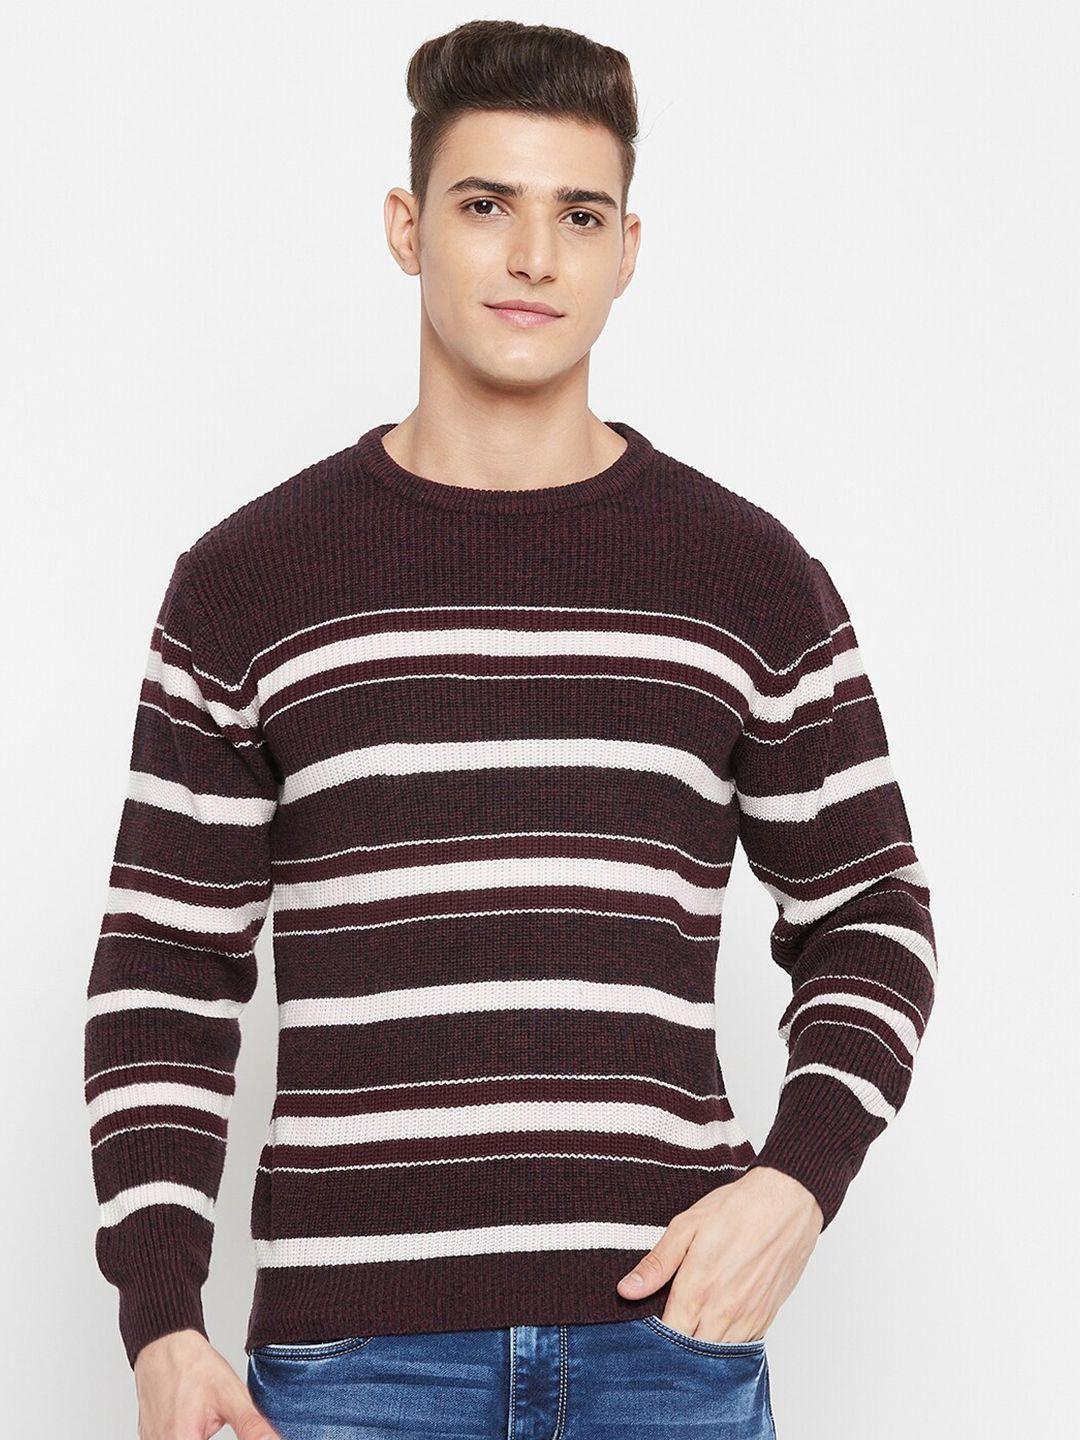 duke men maroon & white striped pullover